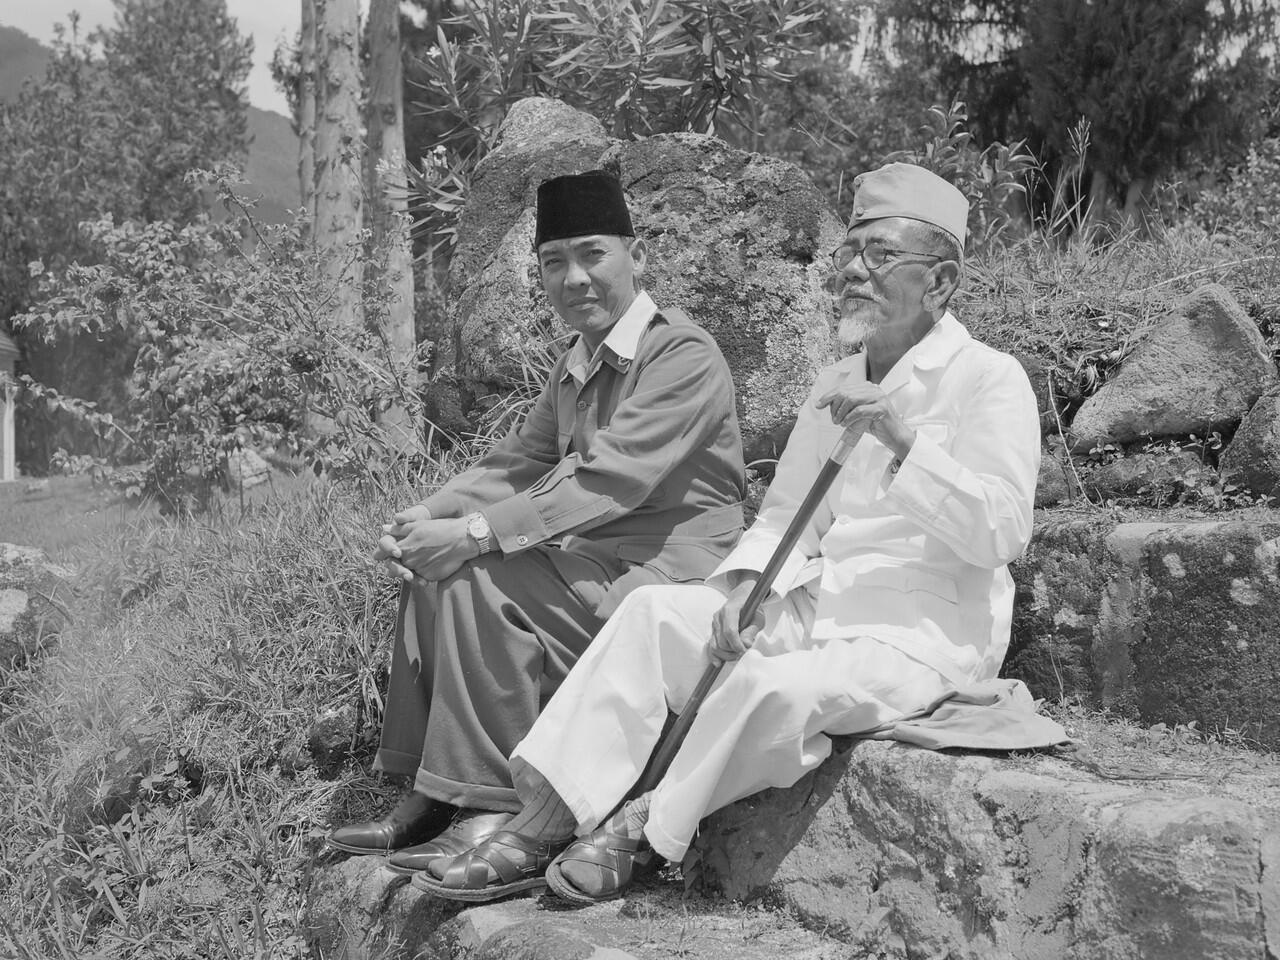 Mengenal tokoh pejuang Indonesia, KH. Agus Salim. Si Kecil yang pandai diplomasi